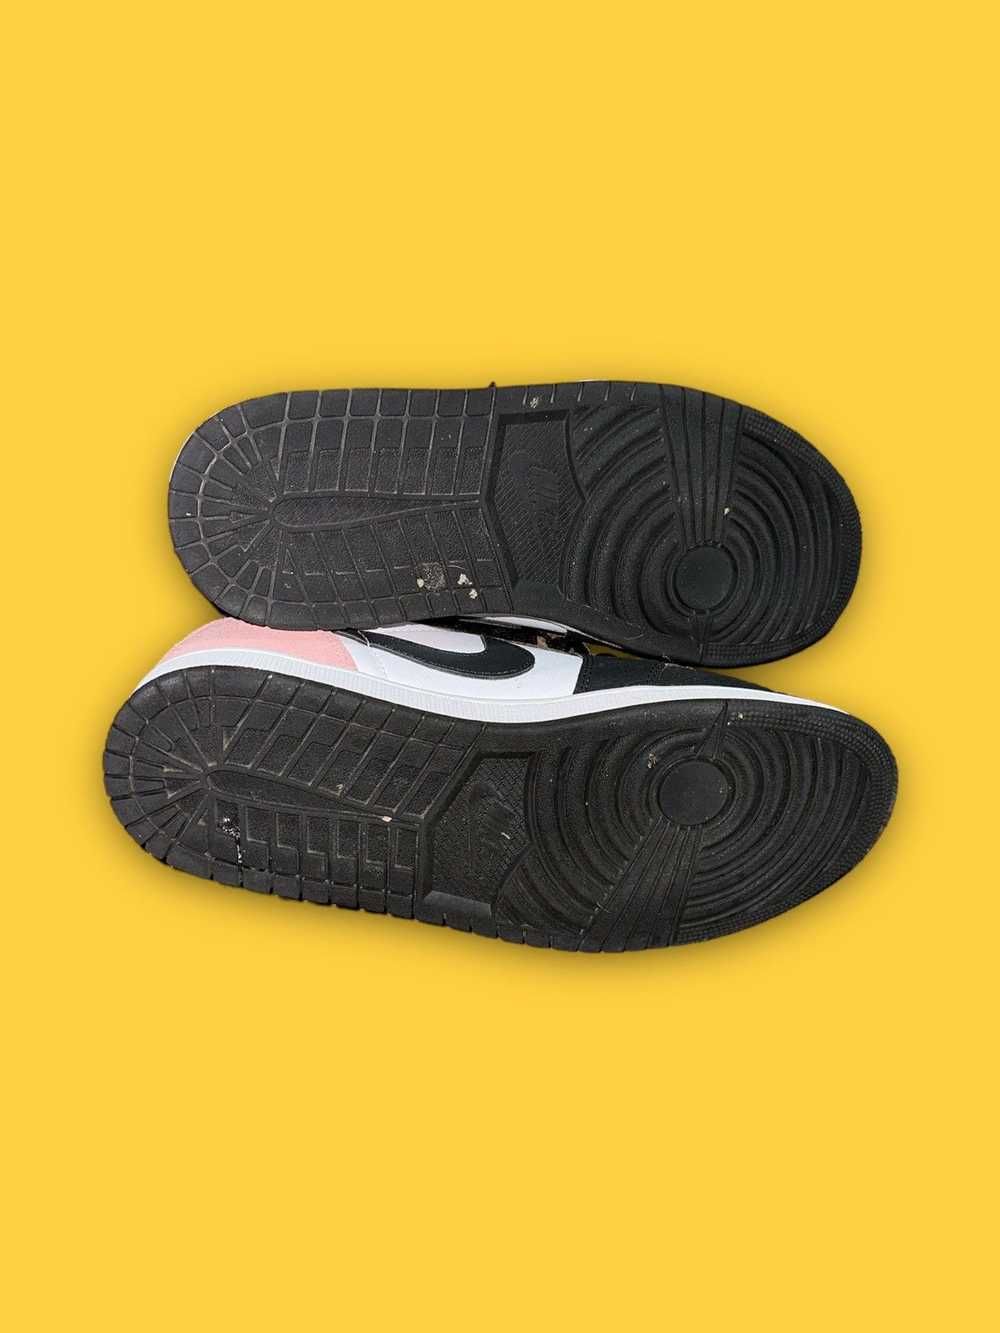 Jordan Brand × Nike Air Jordan 1 low OG - image 6